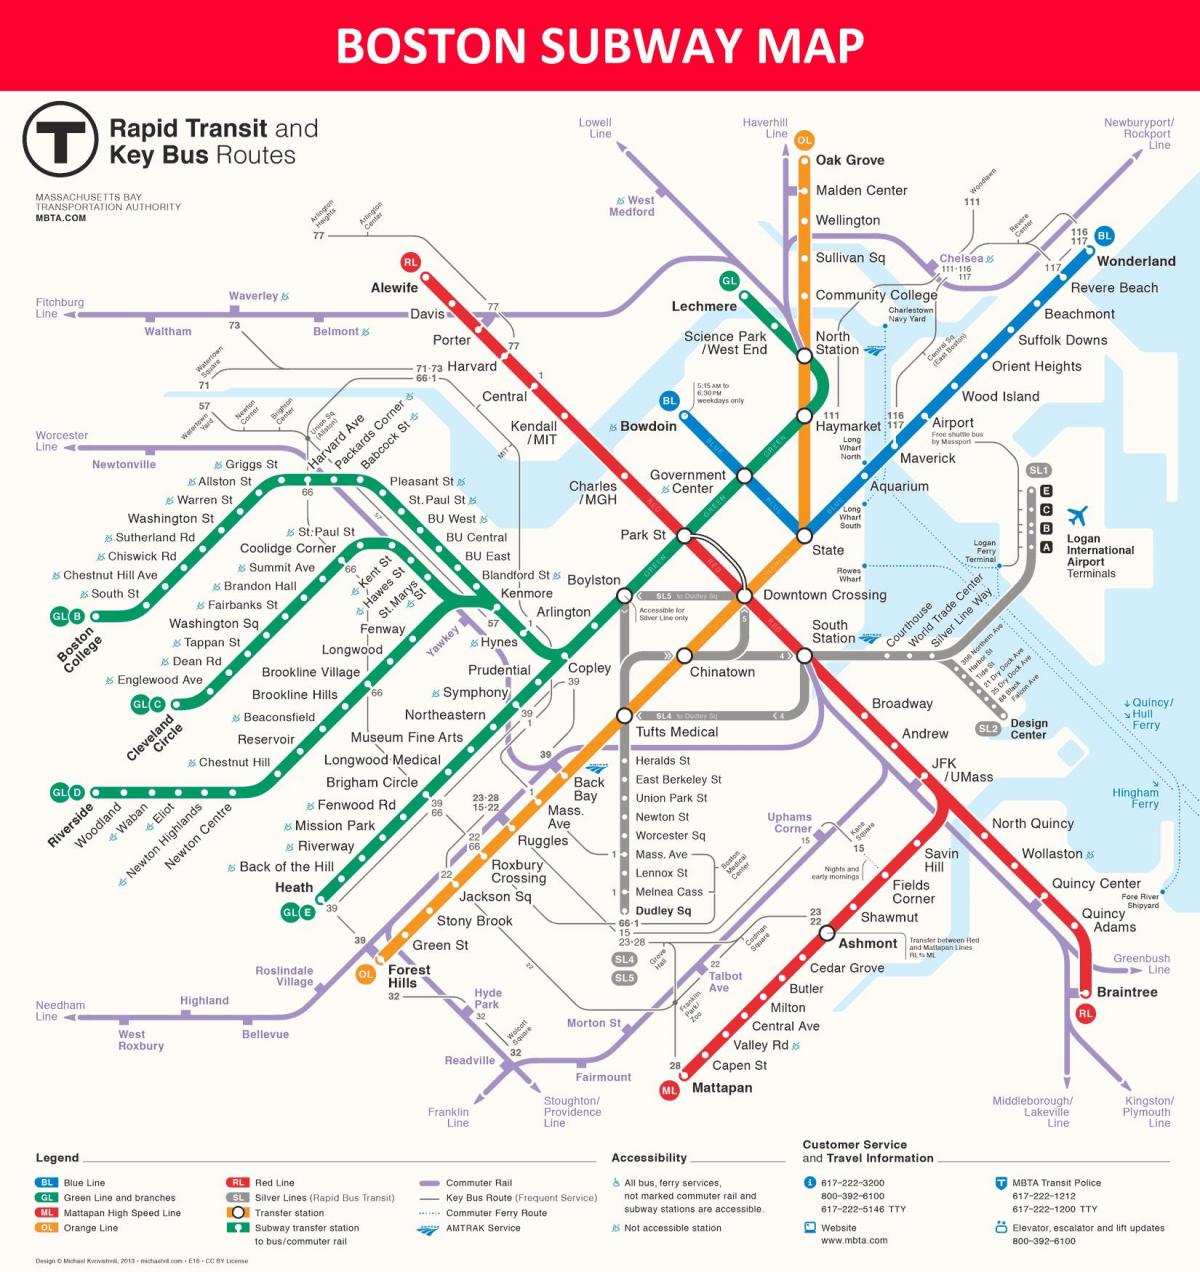 ボストンの地下鉄駅の地図